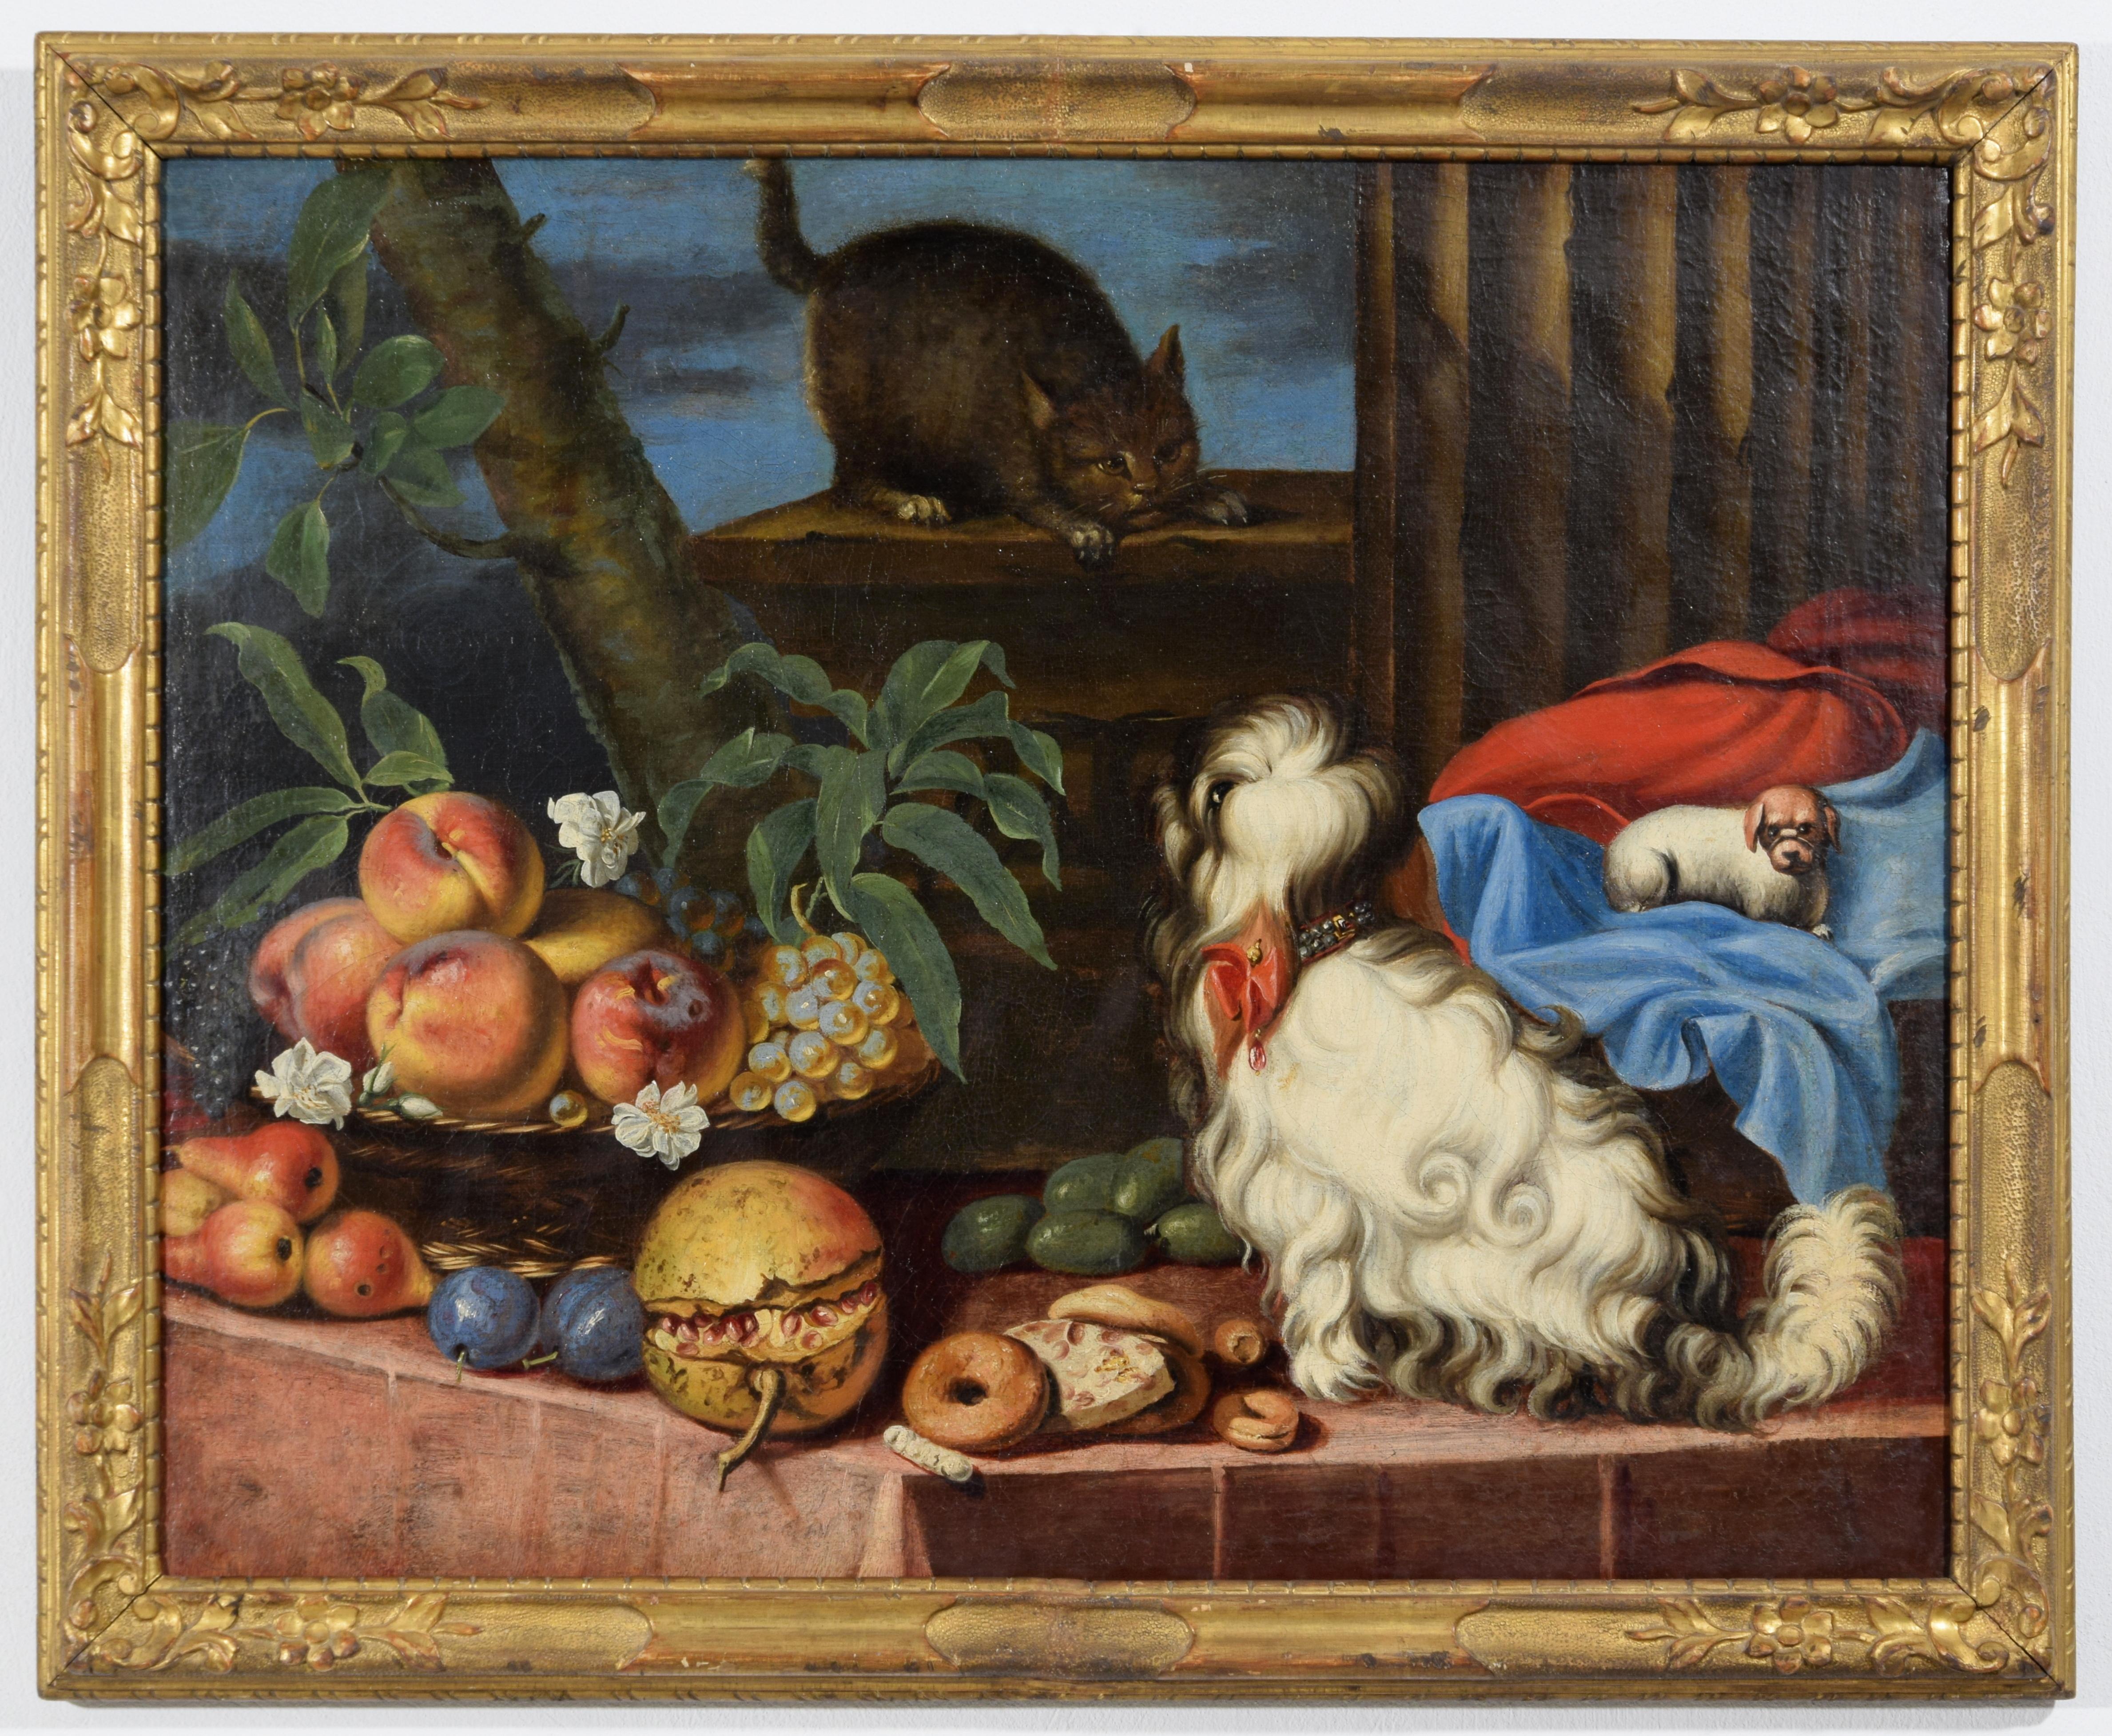 17. Jahrhundert, Italienisches Gemälde mit Stillleben mit Obst, Hunden und Katze
Abmessungen: Mit Rahmen cm B 93 x H 75,5 x T 4; Rahmen cm B 82,5 x H 66,5

Das in Öl auf Leinwand gemalte Bild ist stilistisch einem Maler zuzuordnen, der im